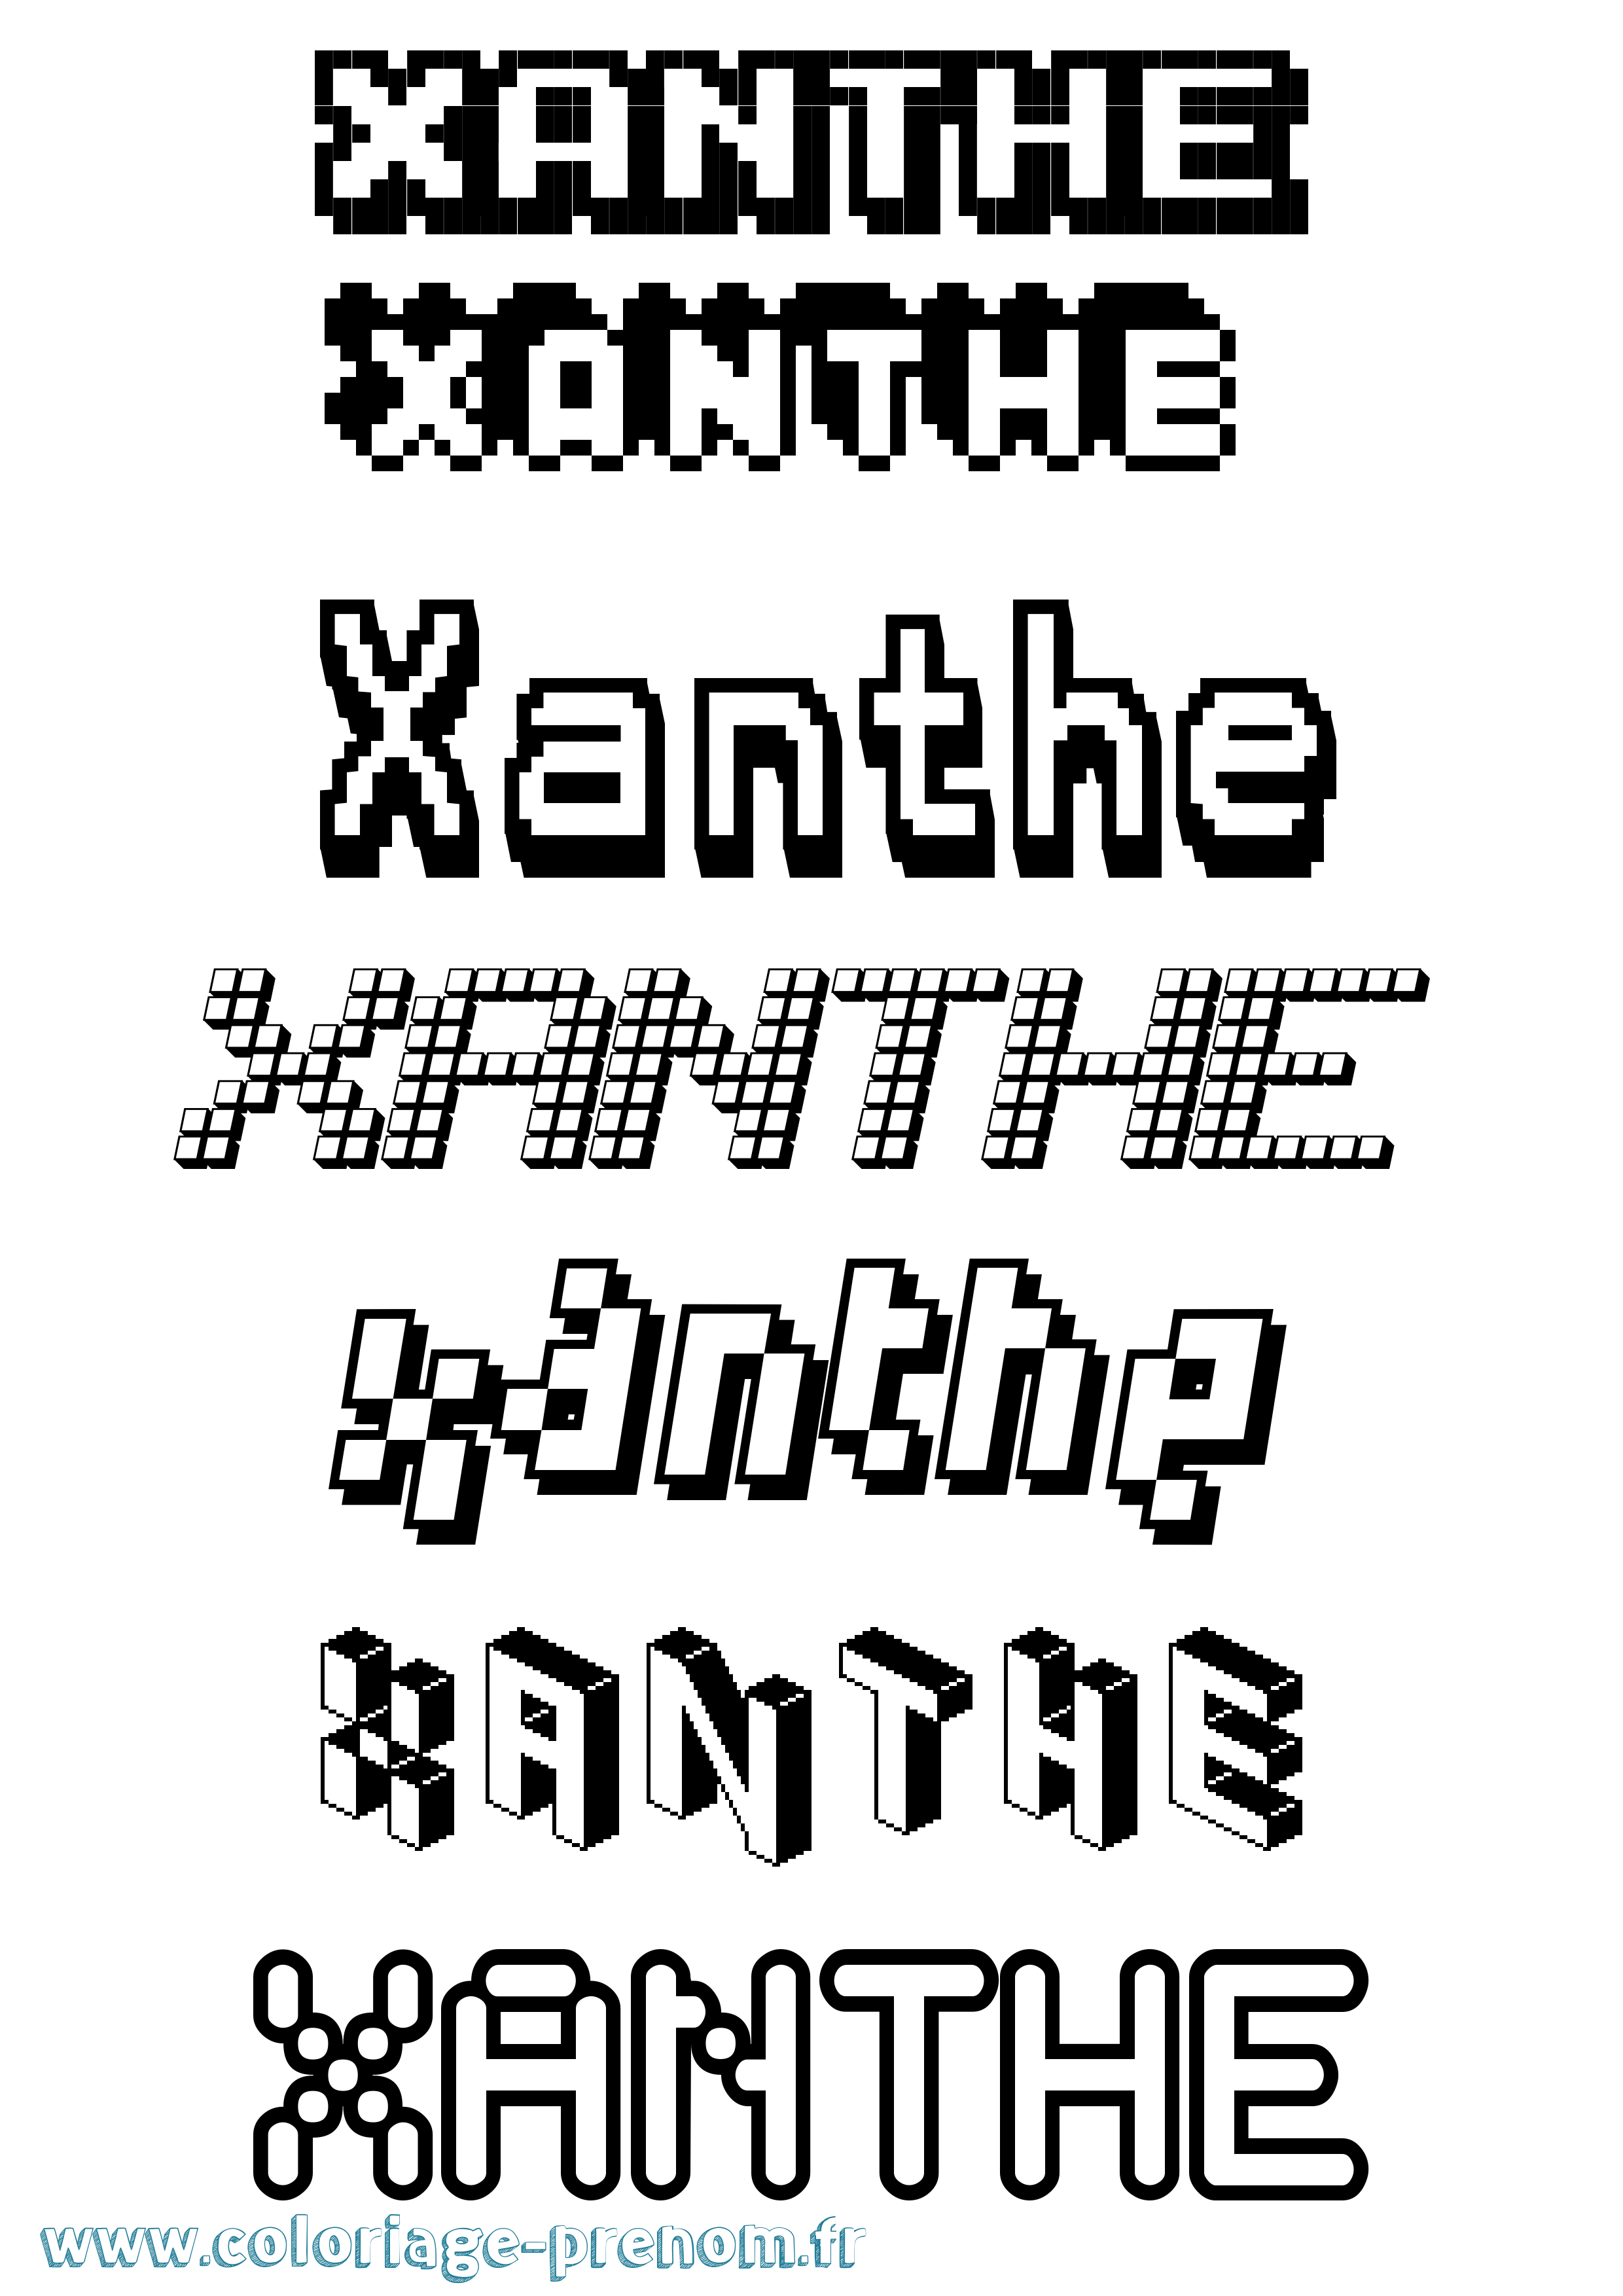 Coloriage prénom Xanthe Pixel